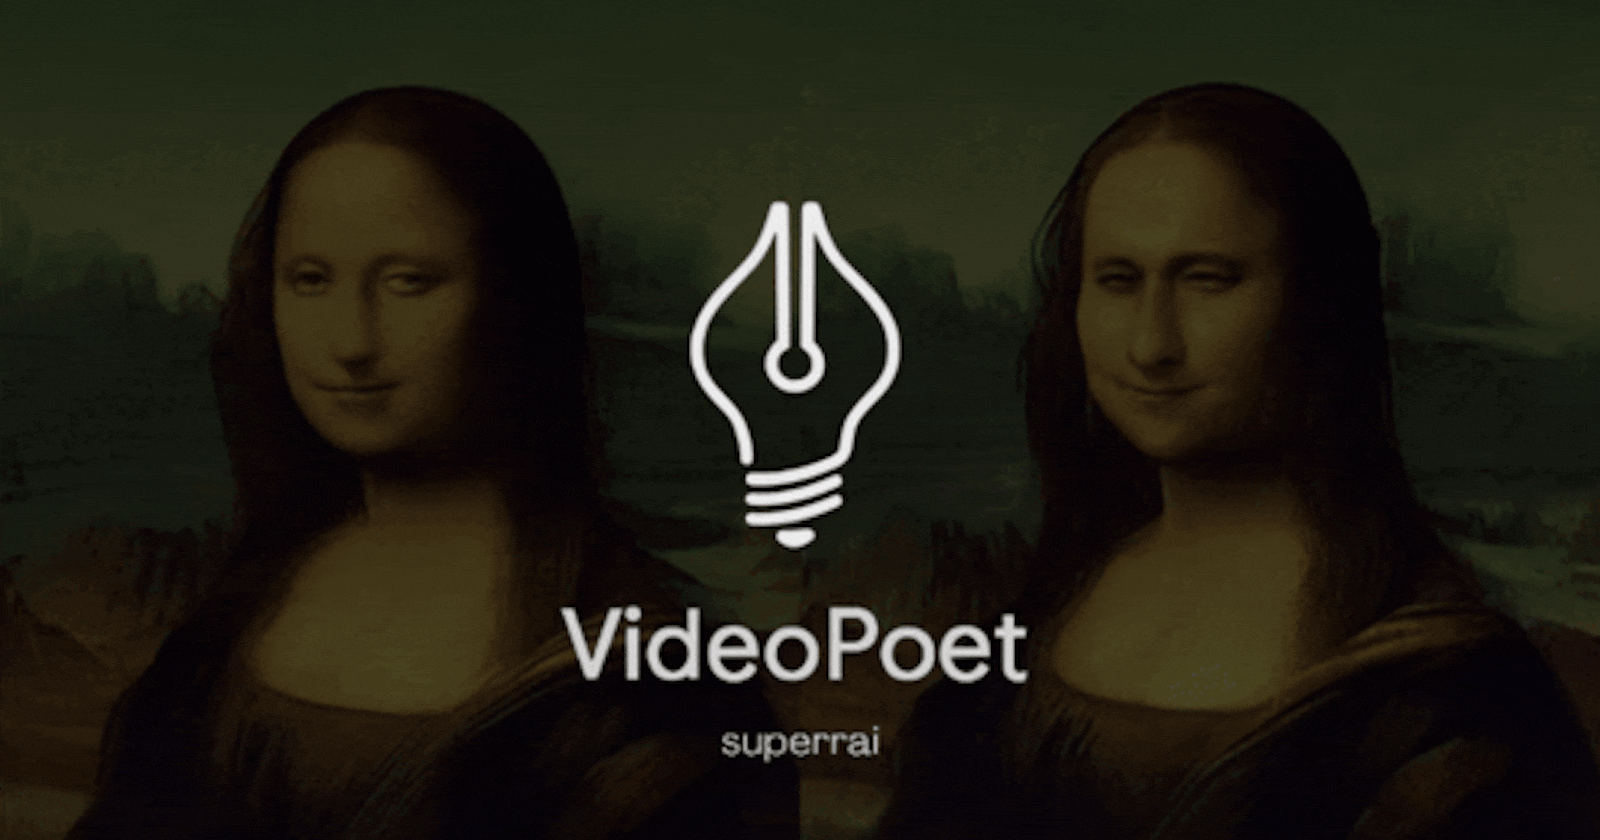 What is Google Video Poet?